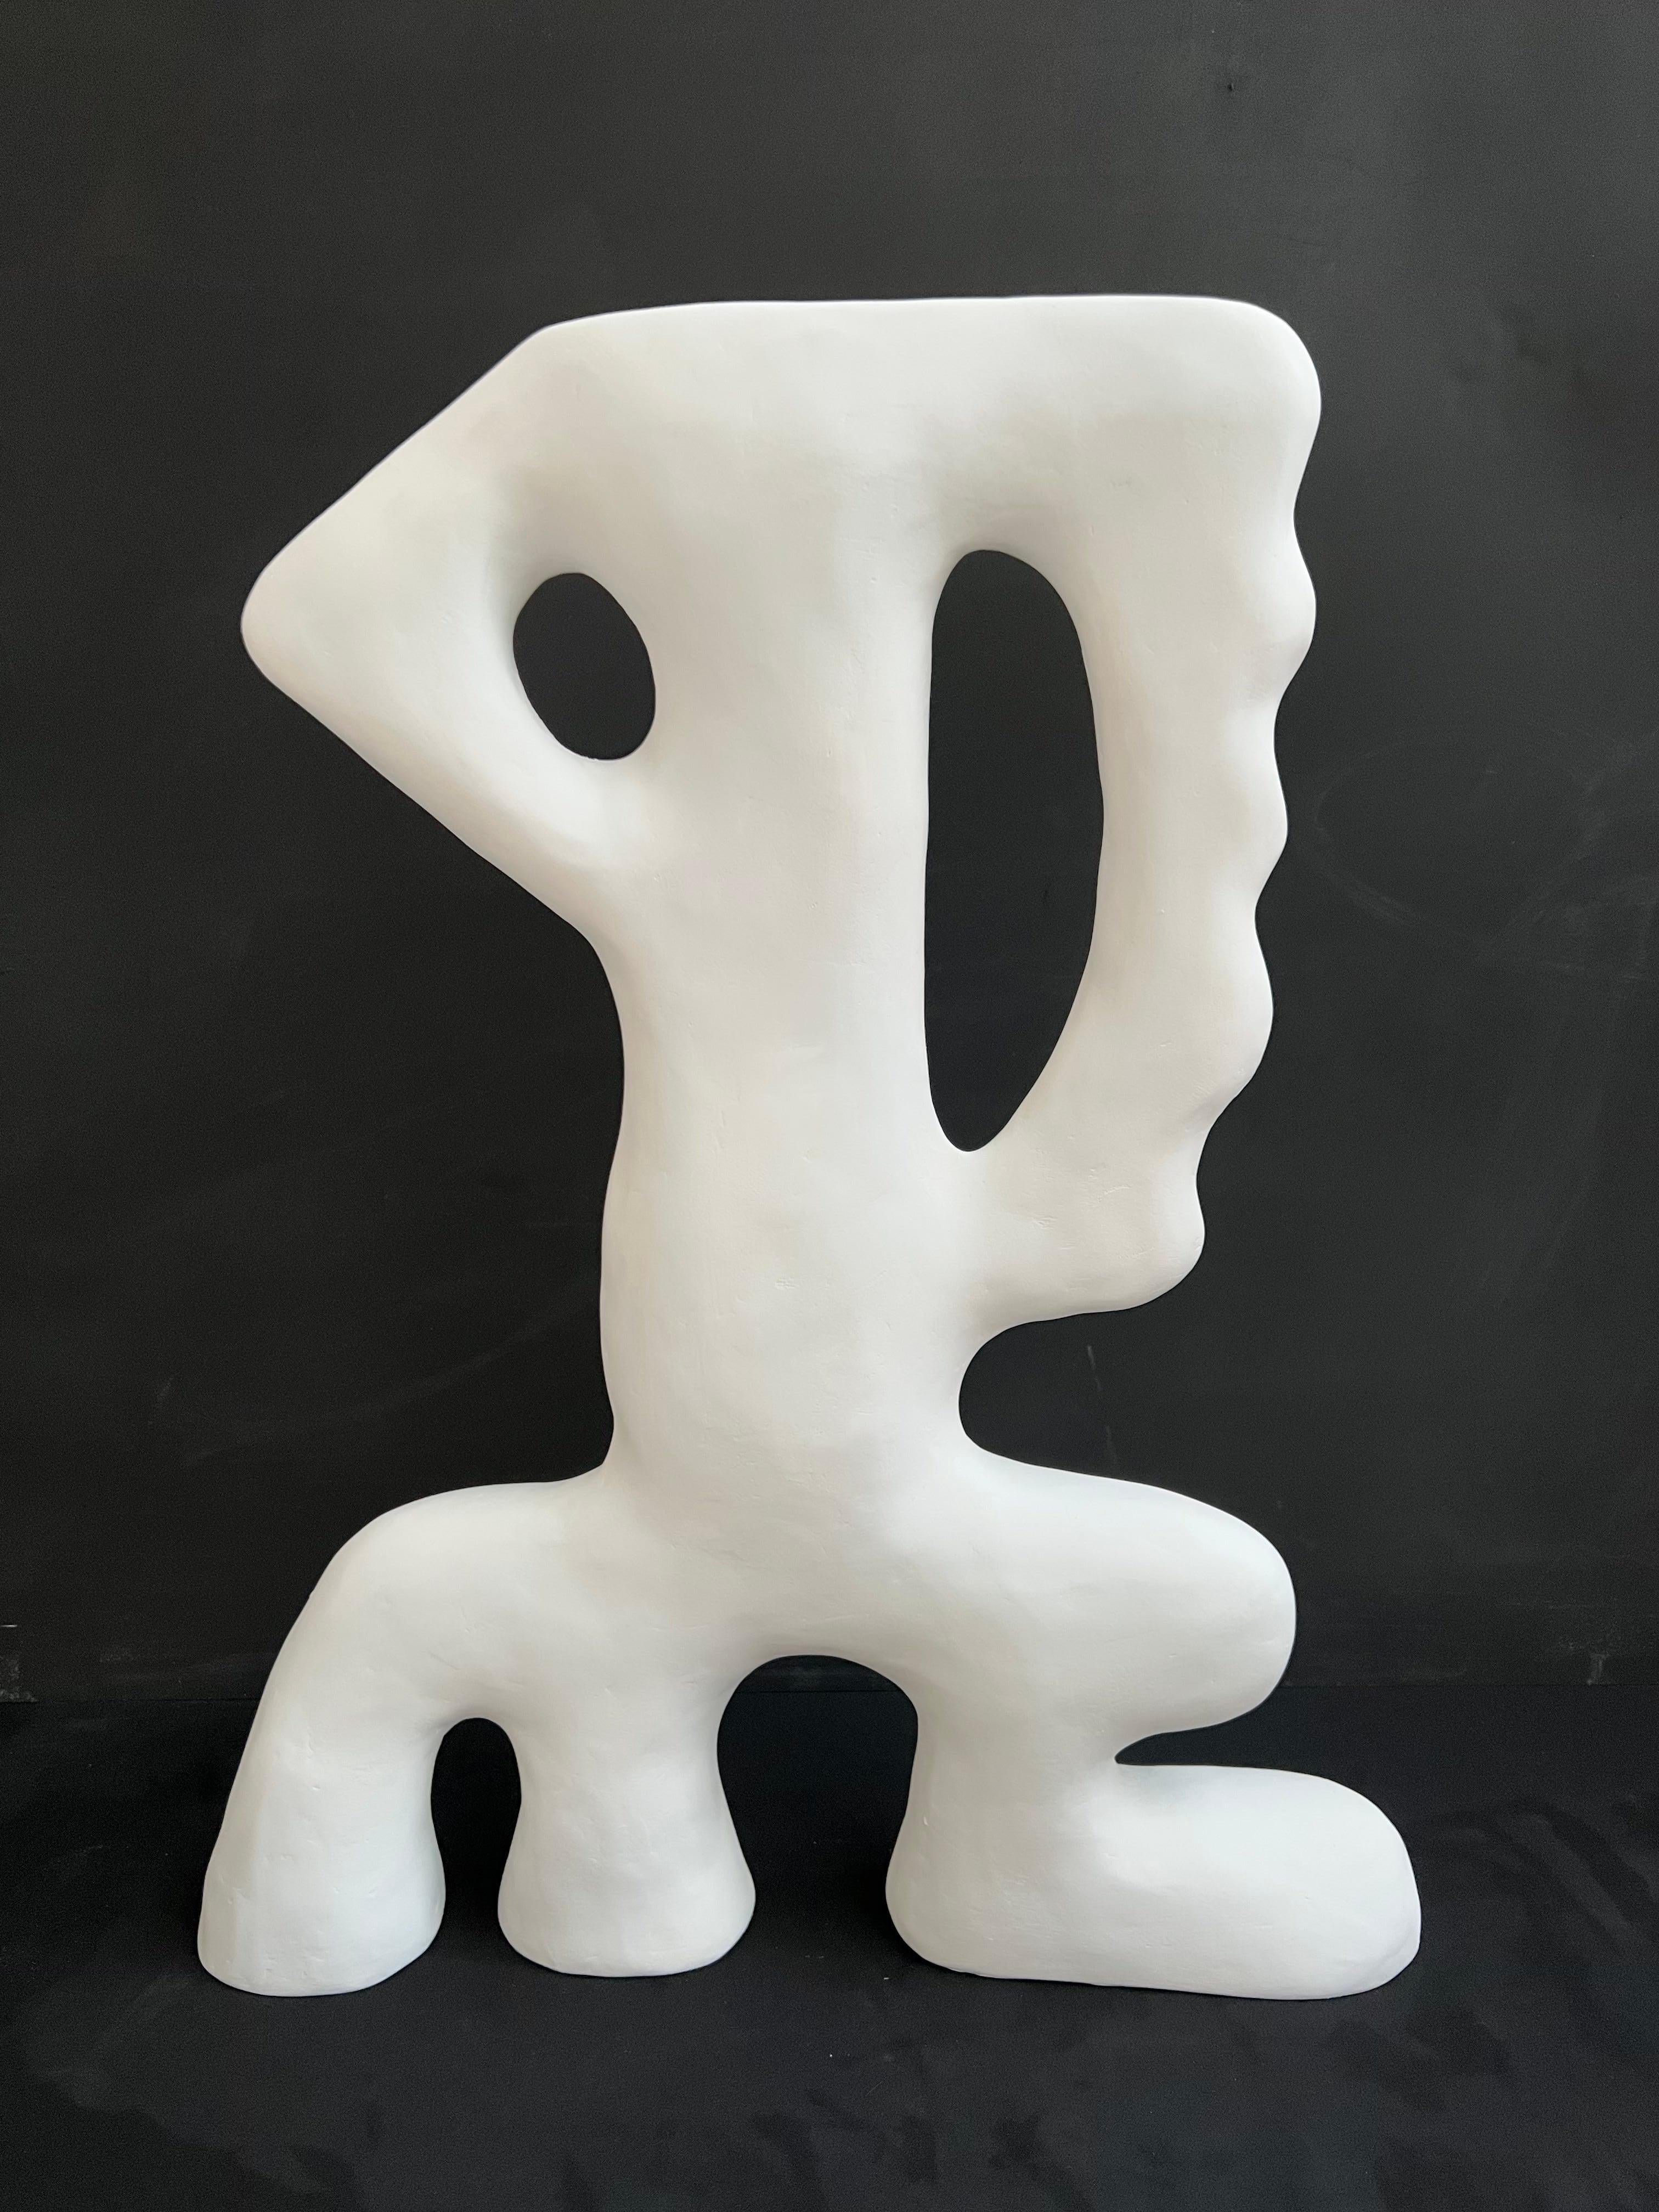 
Une sculpture abstraite unique en son genre, de couleur blanche, issue de la série 